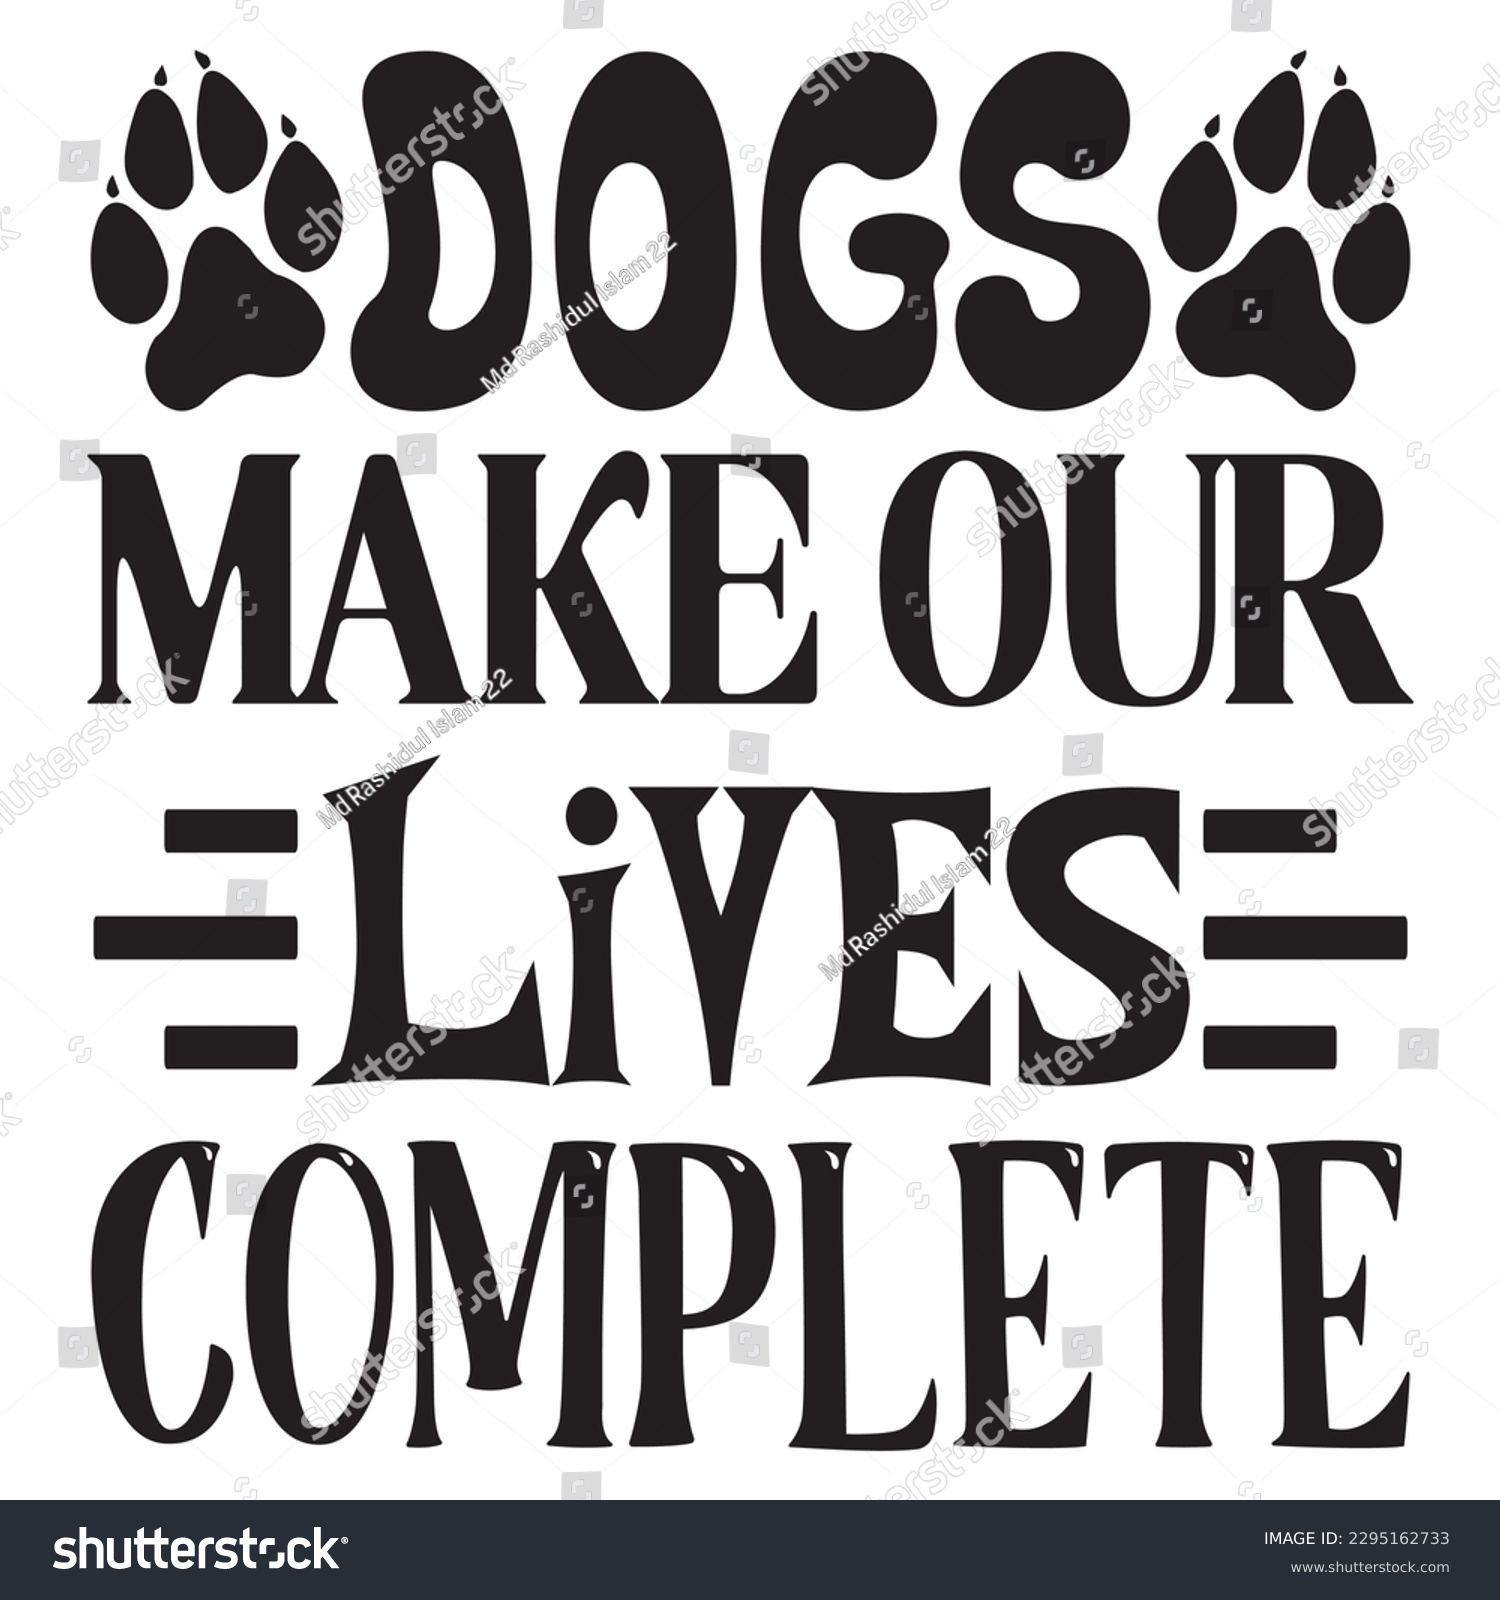 SVG of Dogs Make Our Lives Complete SVG Design Vector file. svg